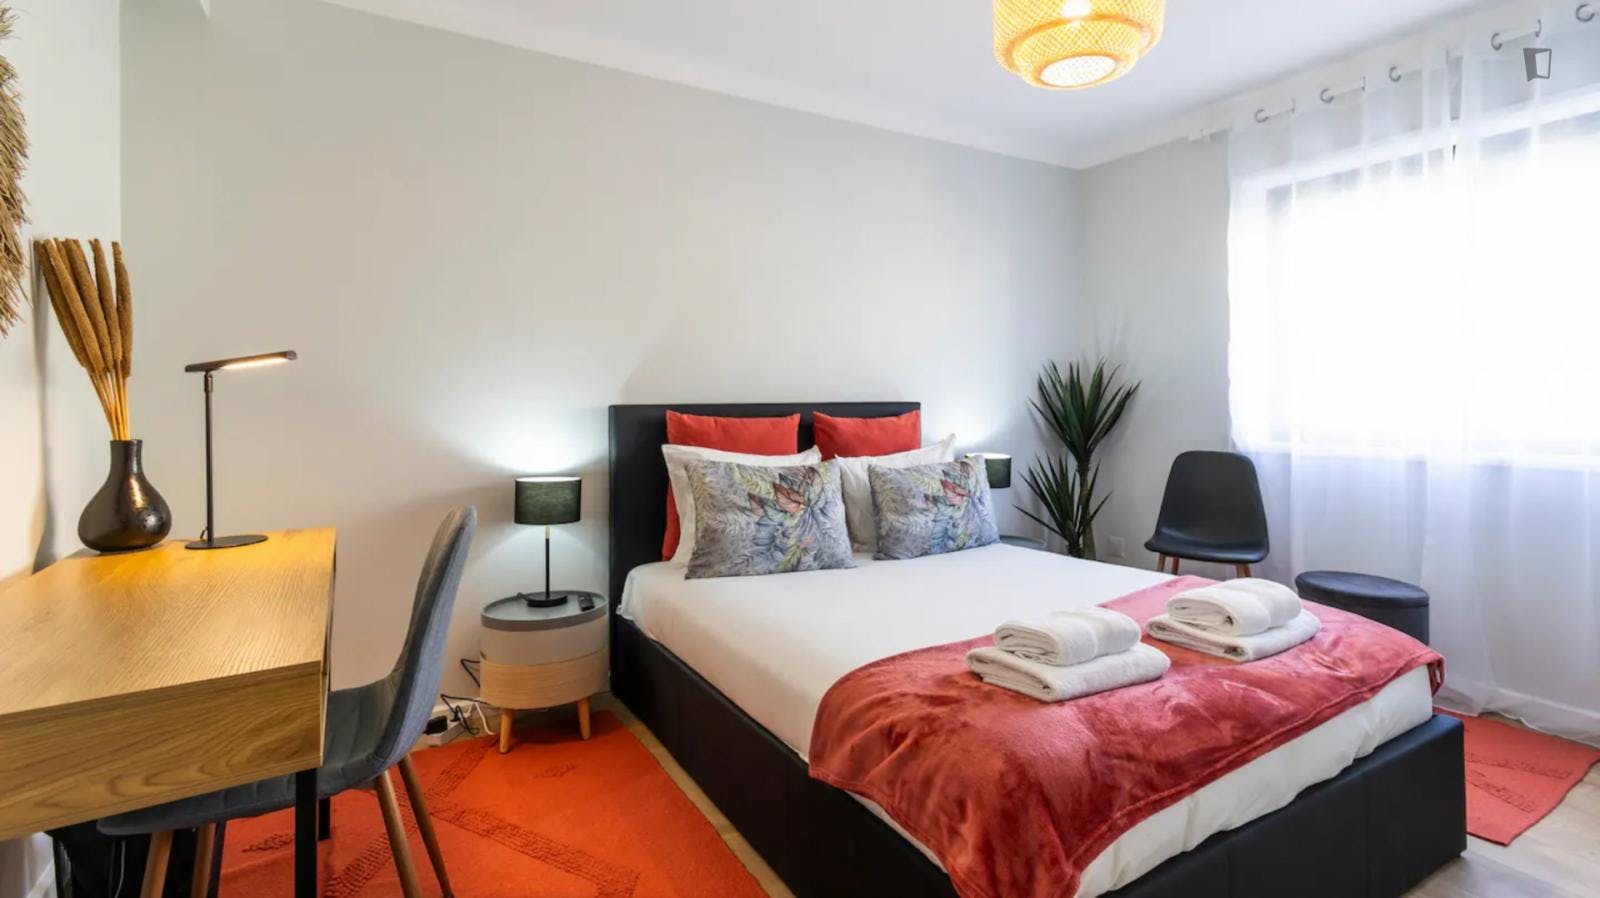 Stunning 3-bedroom flat in Boavista